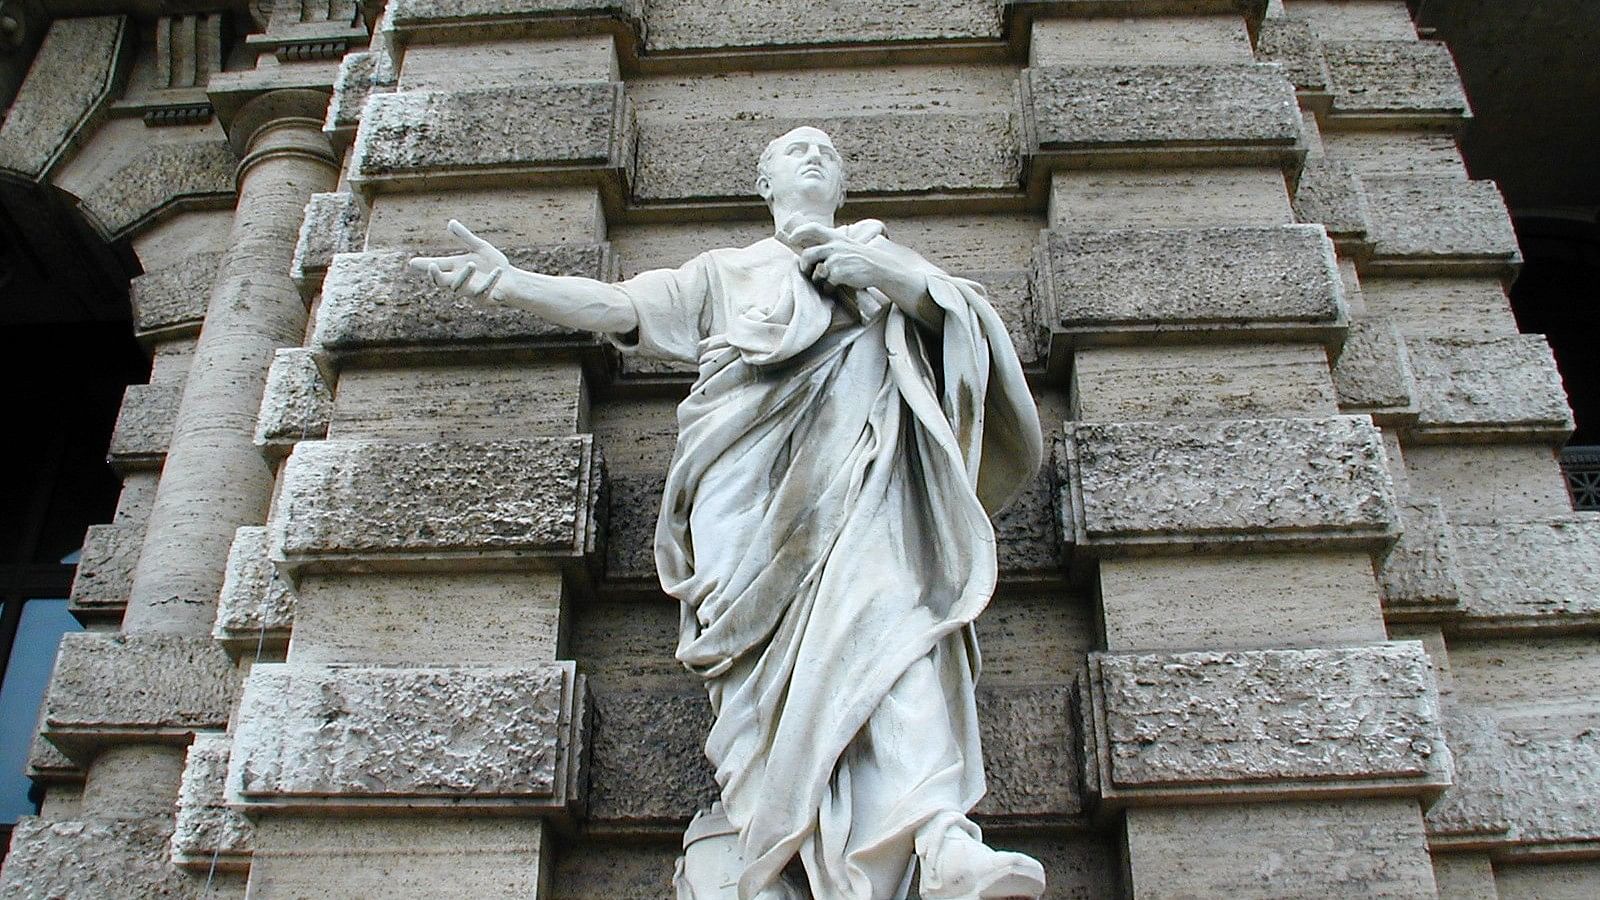 Cicero memorial in Rome, Italy
Cicero 